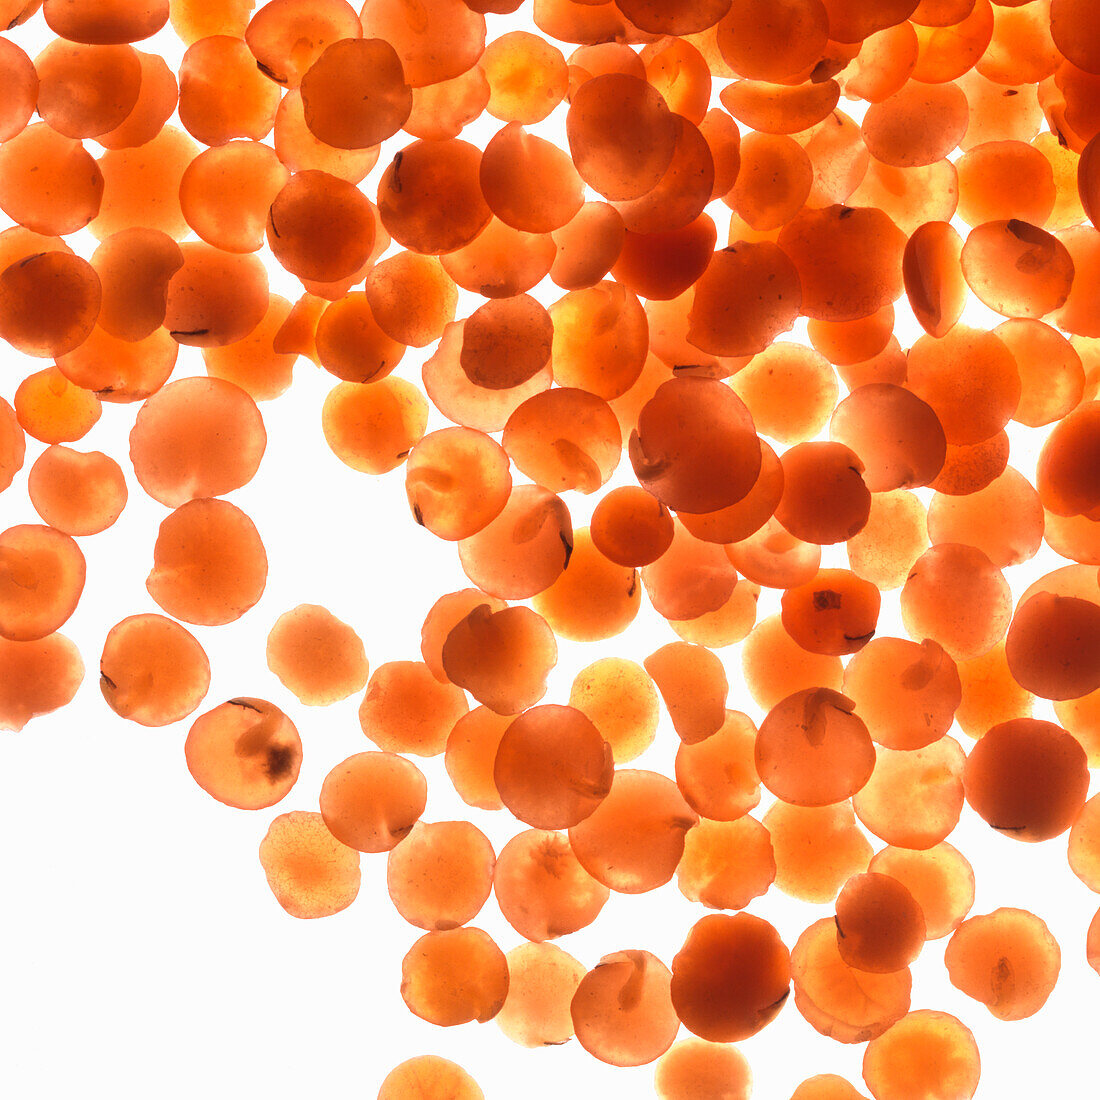 Red lentils (macro shot)